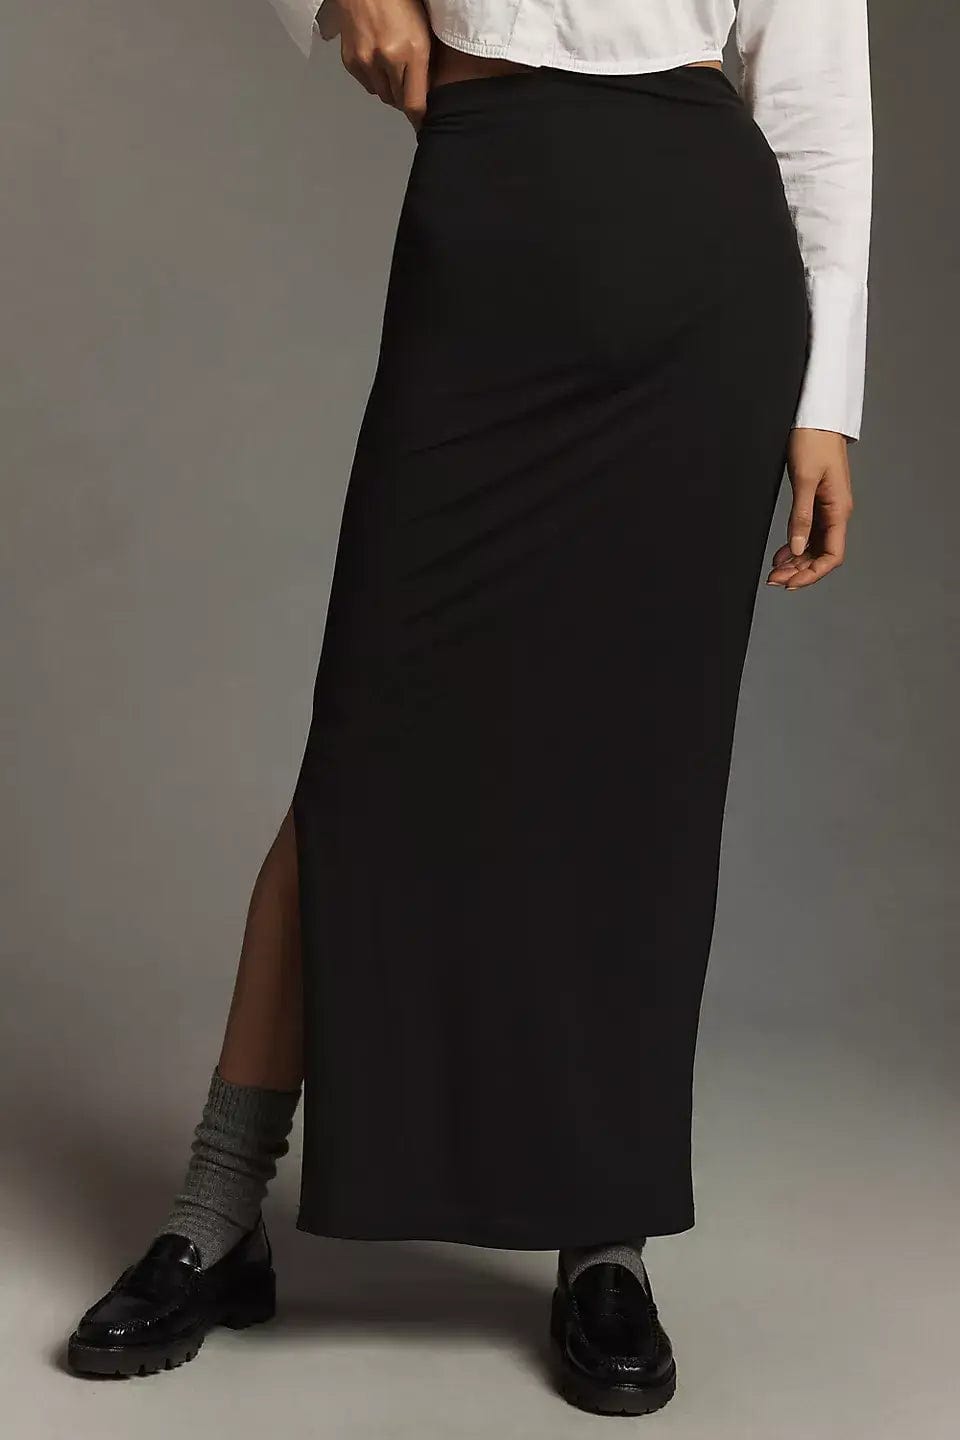 Velvet Skirts Velvet - Hilton Long Skirt in Black